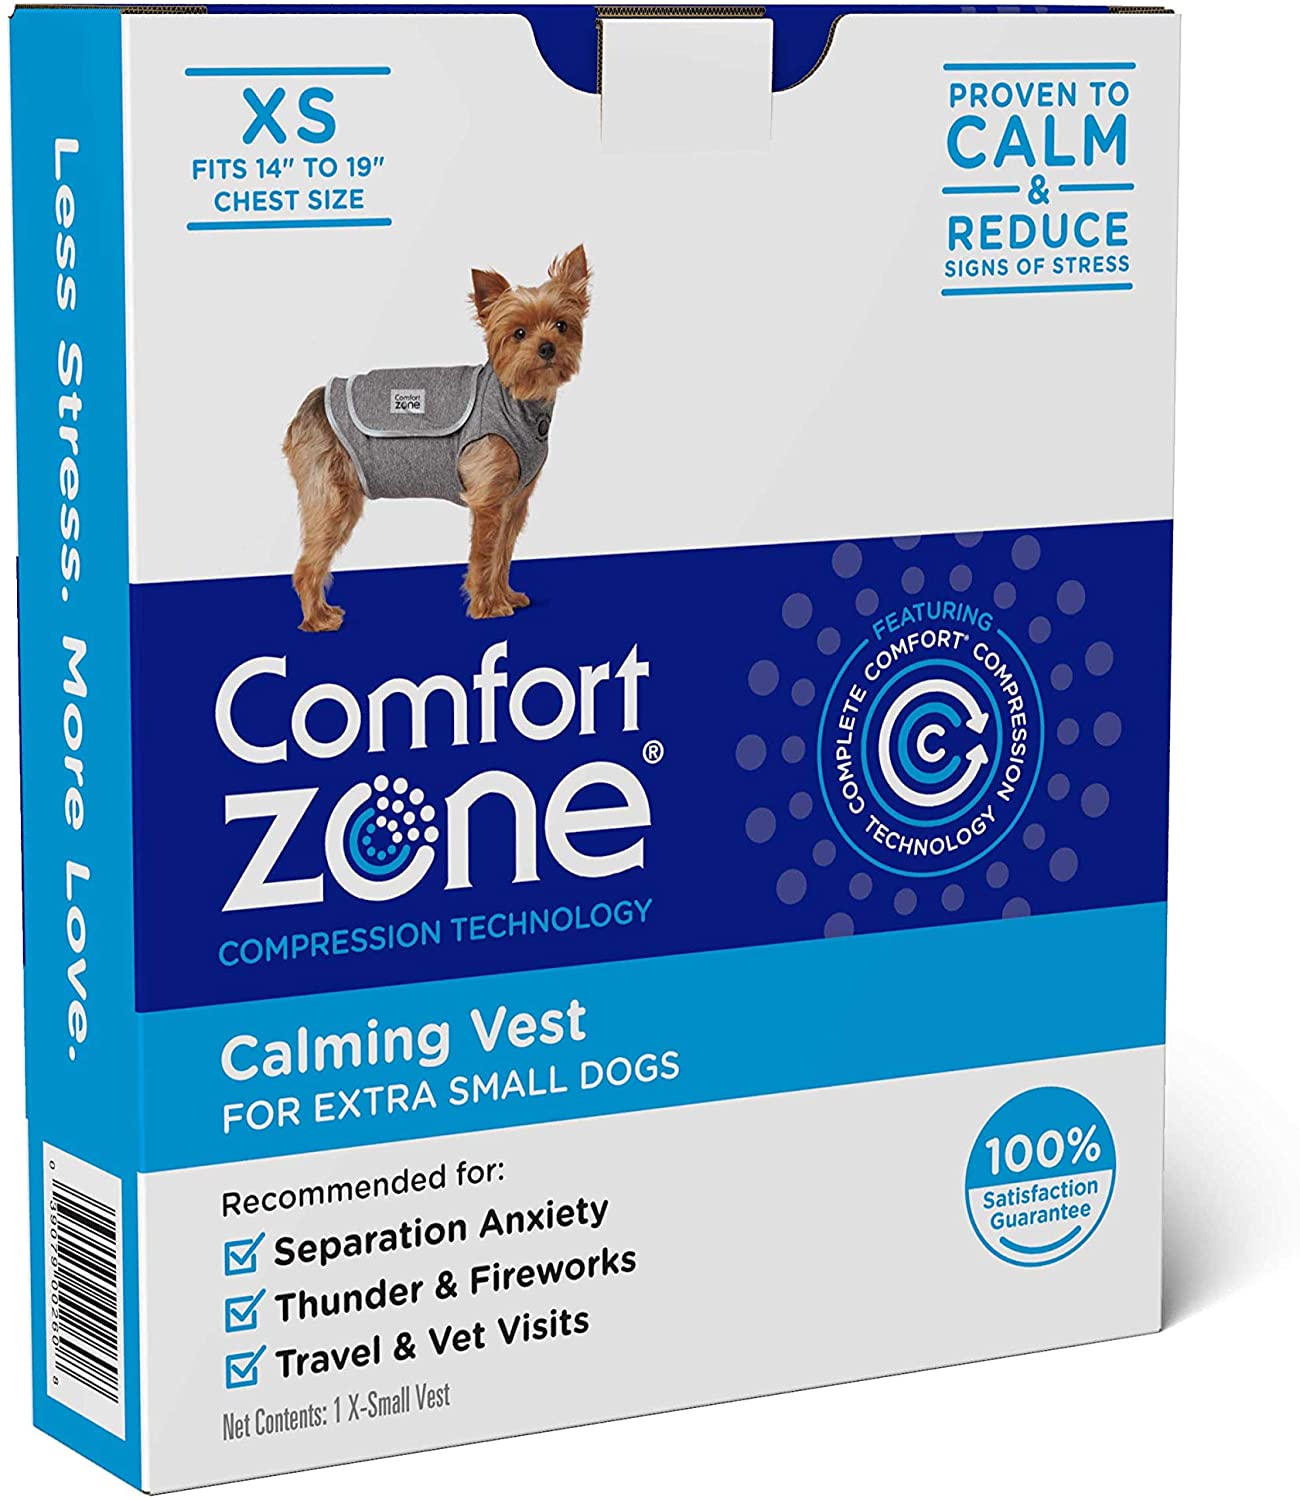  Comfort Zone Chaleco calmante para Perros truenos y ansiedad | Muy pequeño 